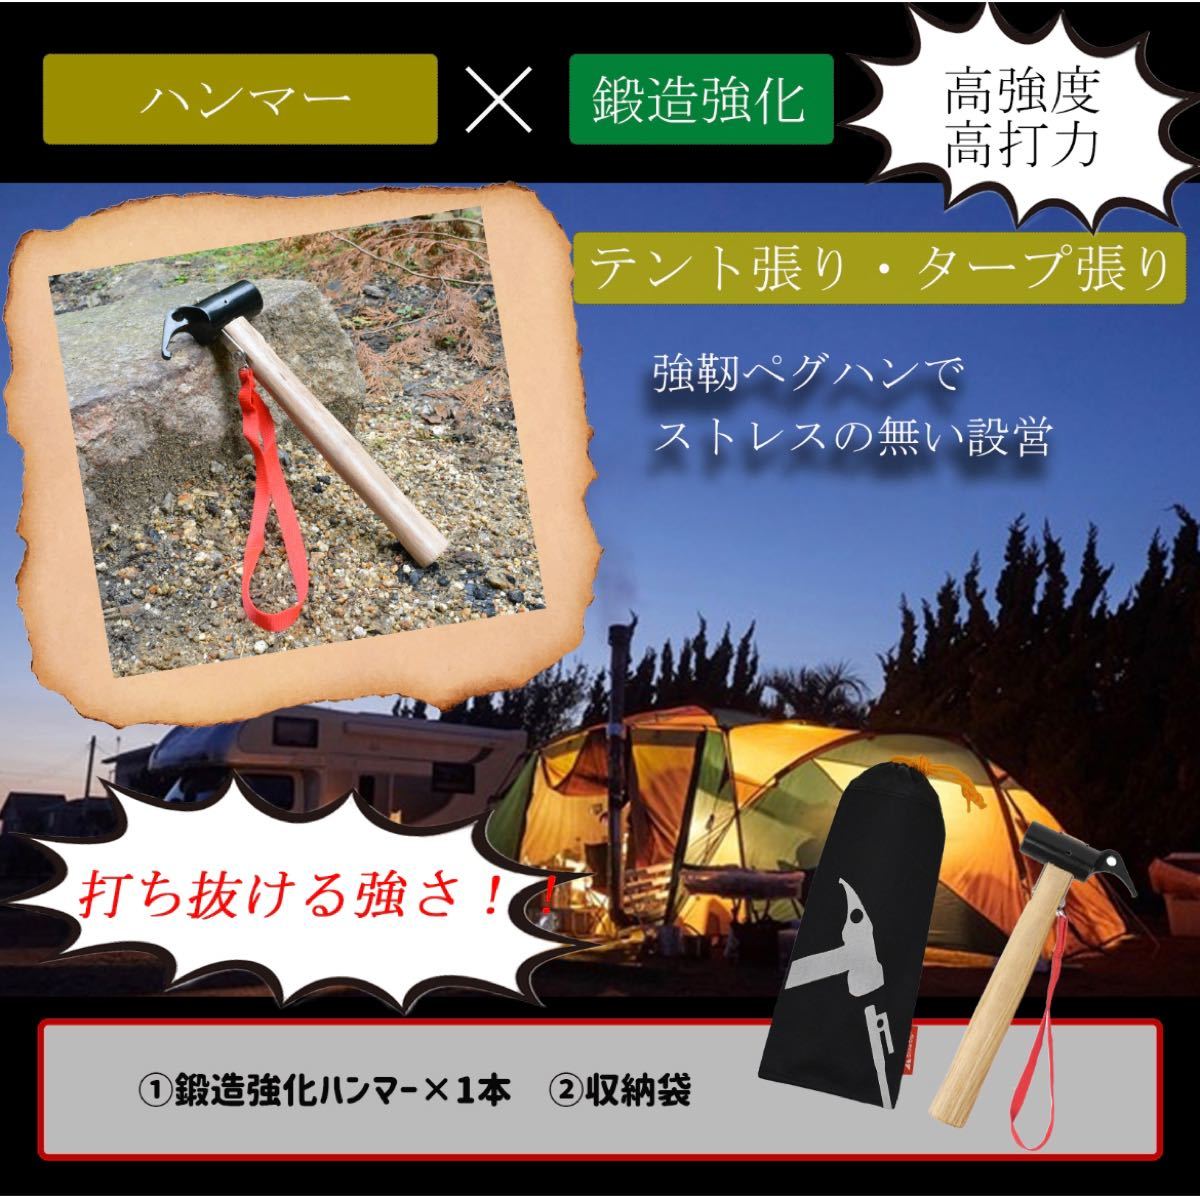 【新品】ペグ ハンマーセット 鍛造強化ハンマー 収納袋 テントハンマー タープ